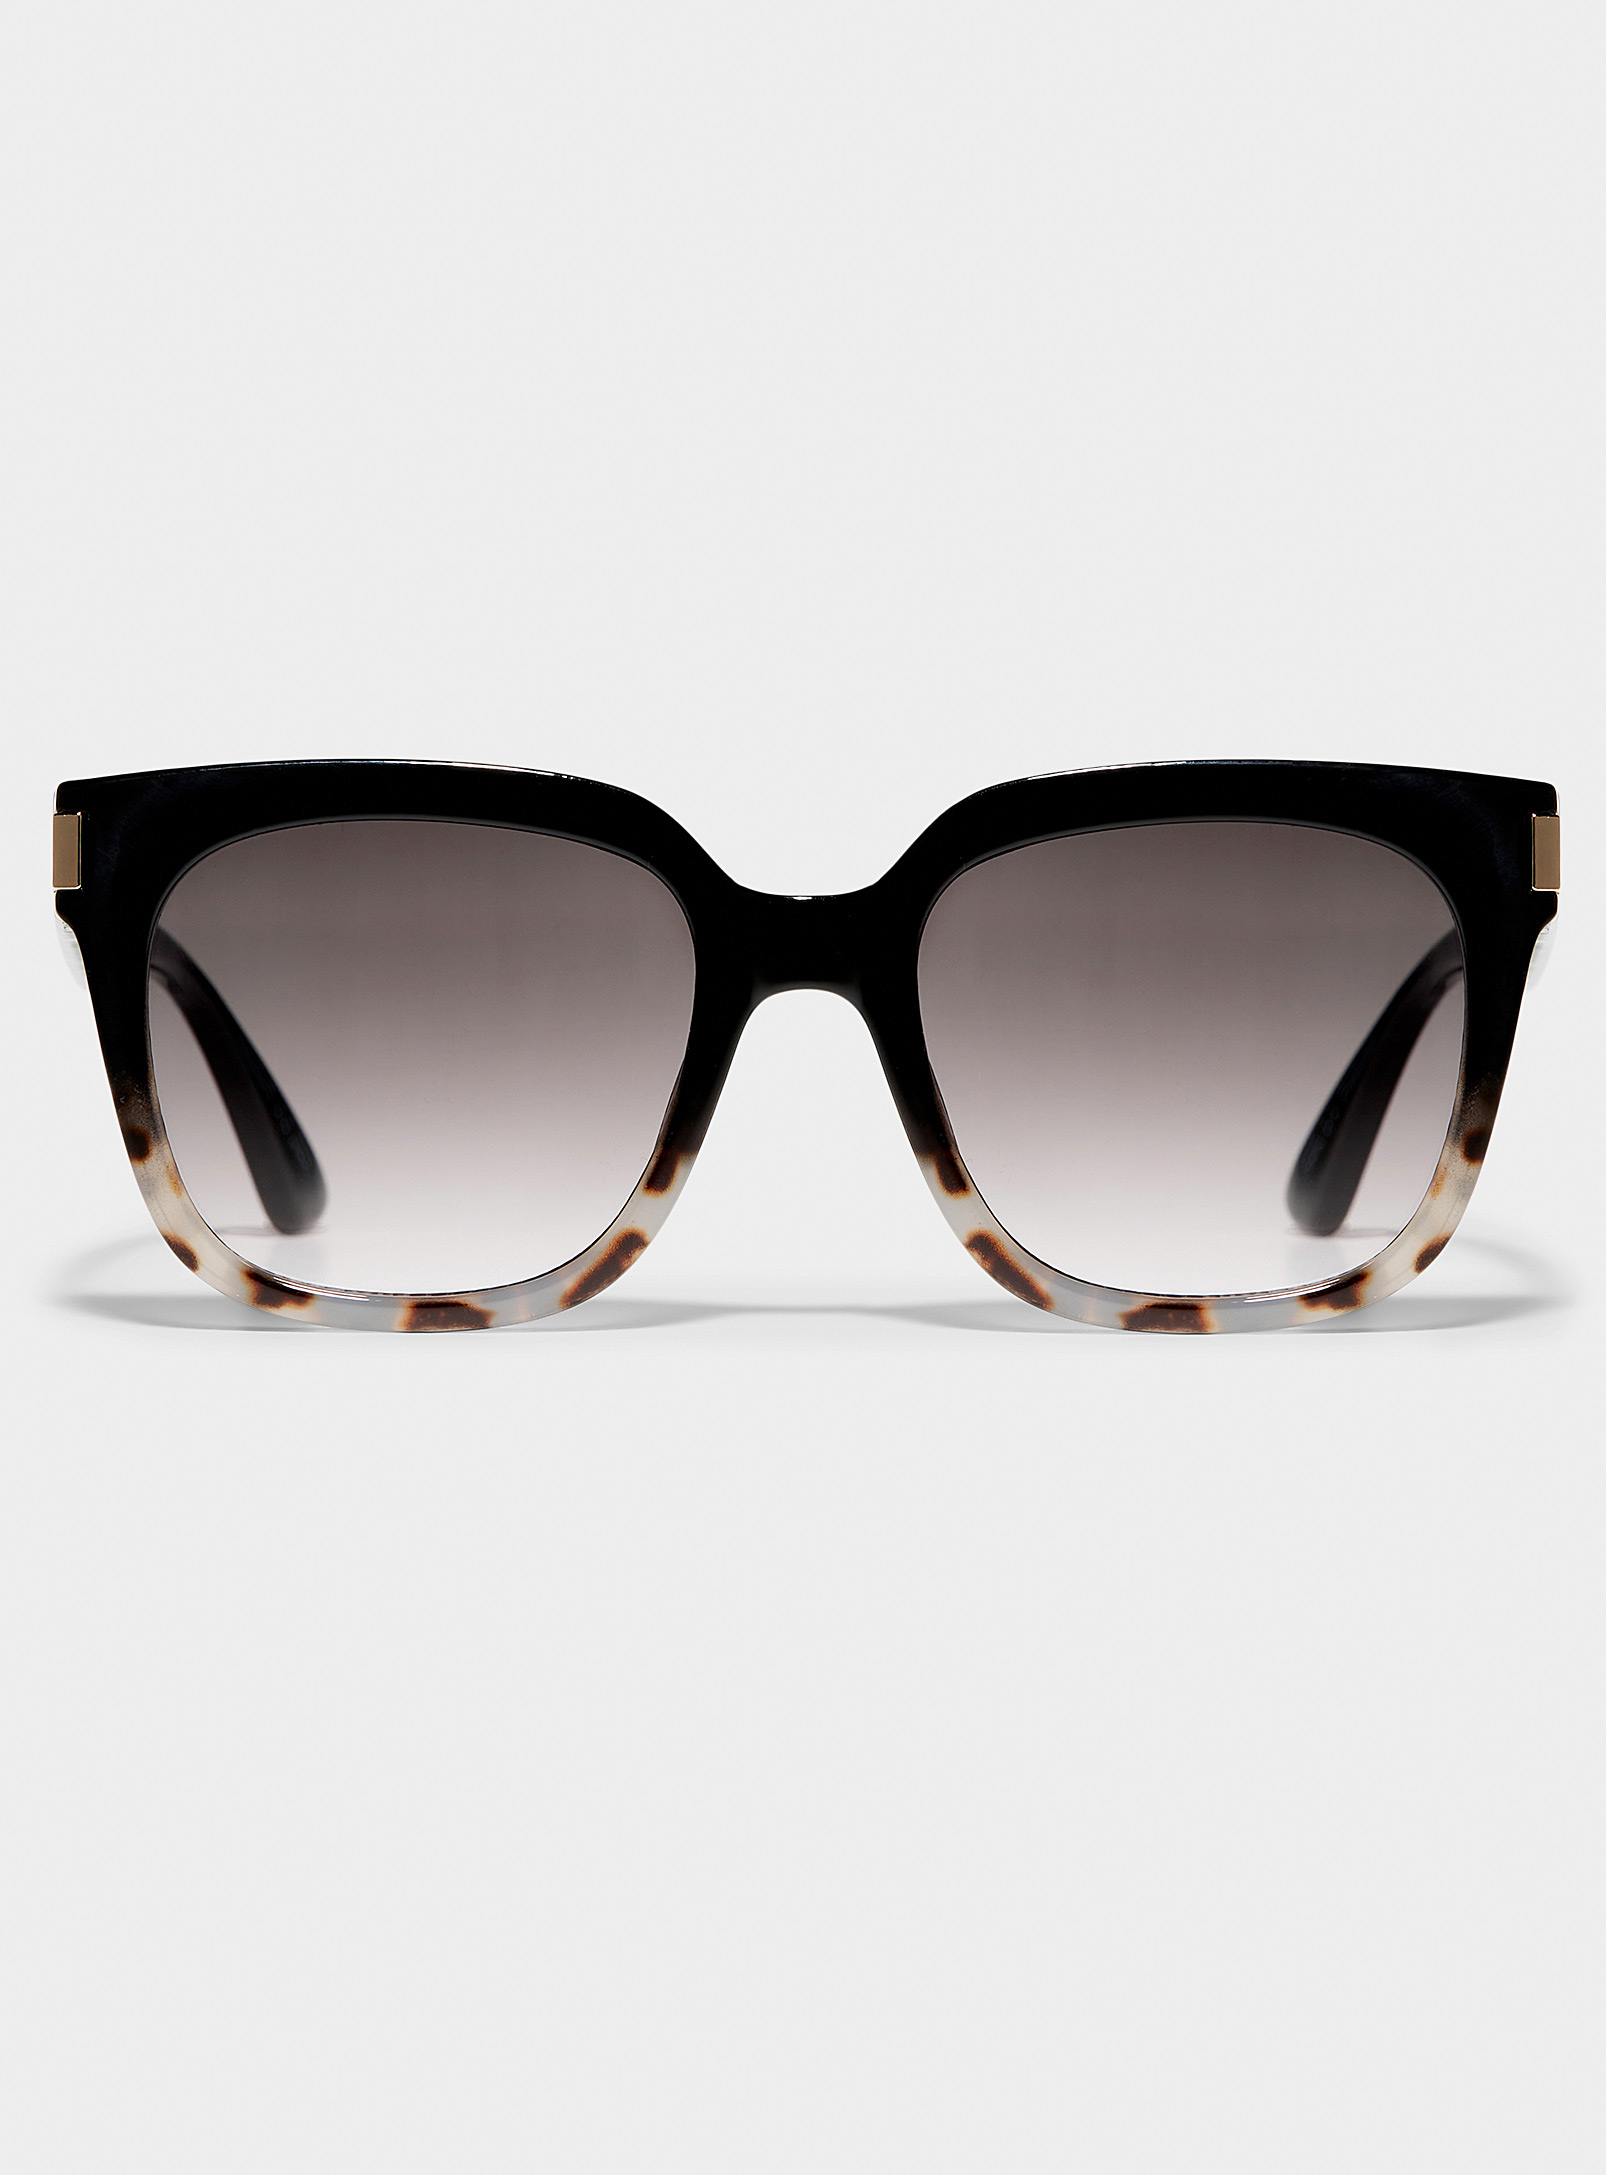 Simons - Women's Two-tone square sunglasses